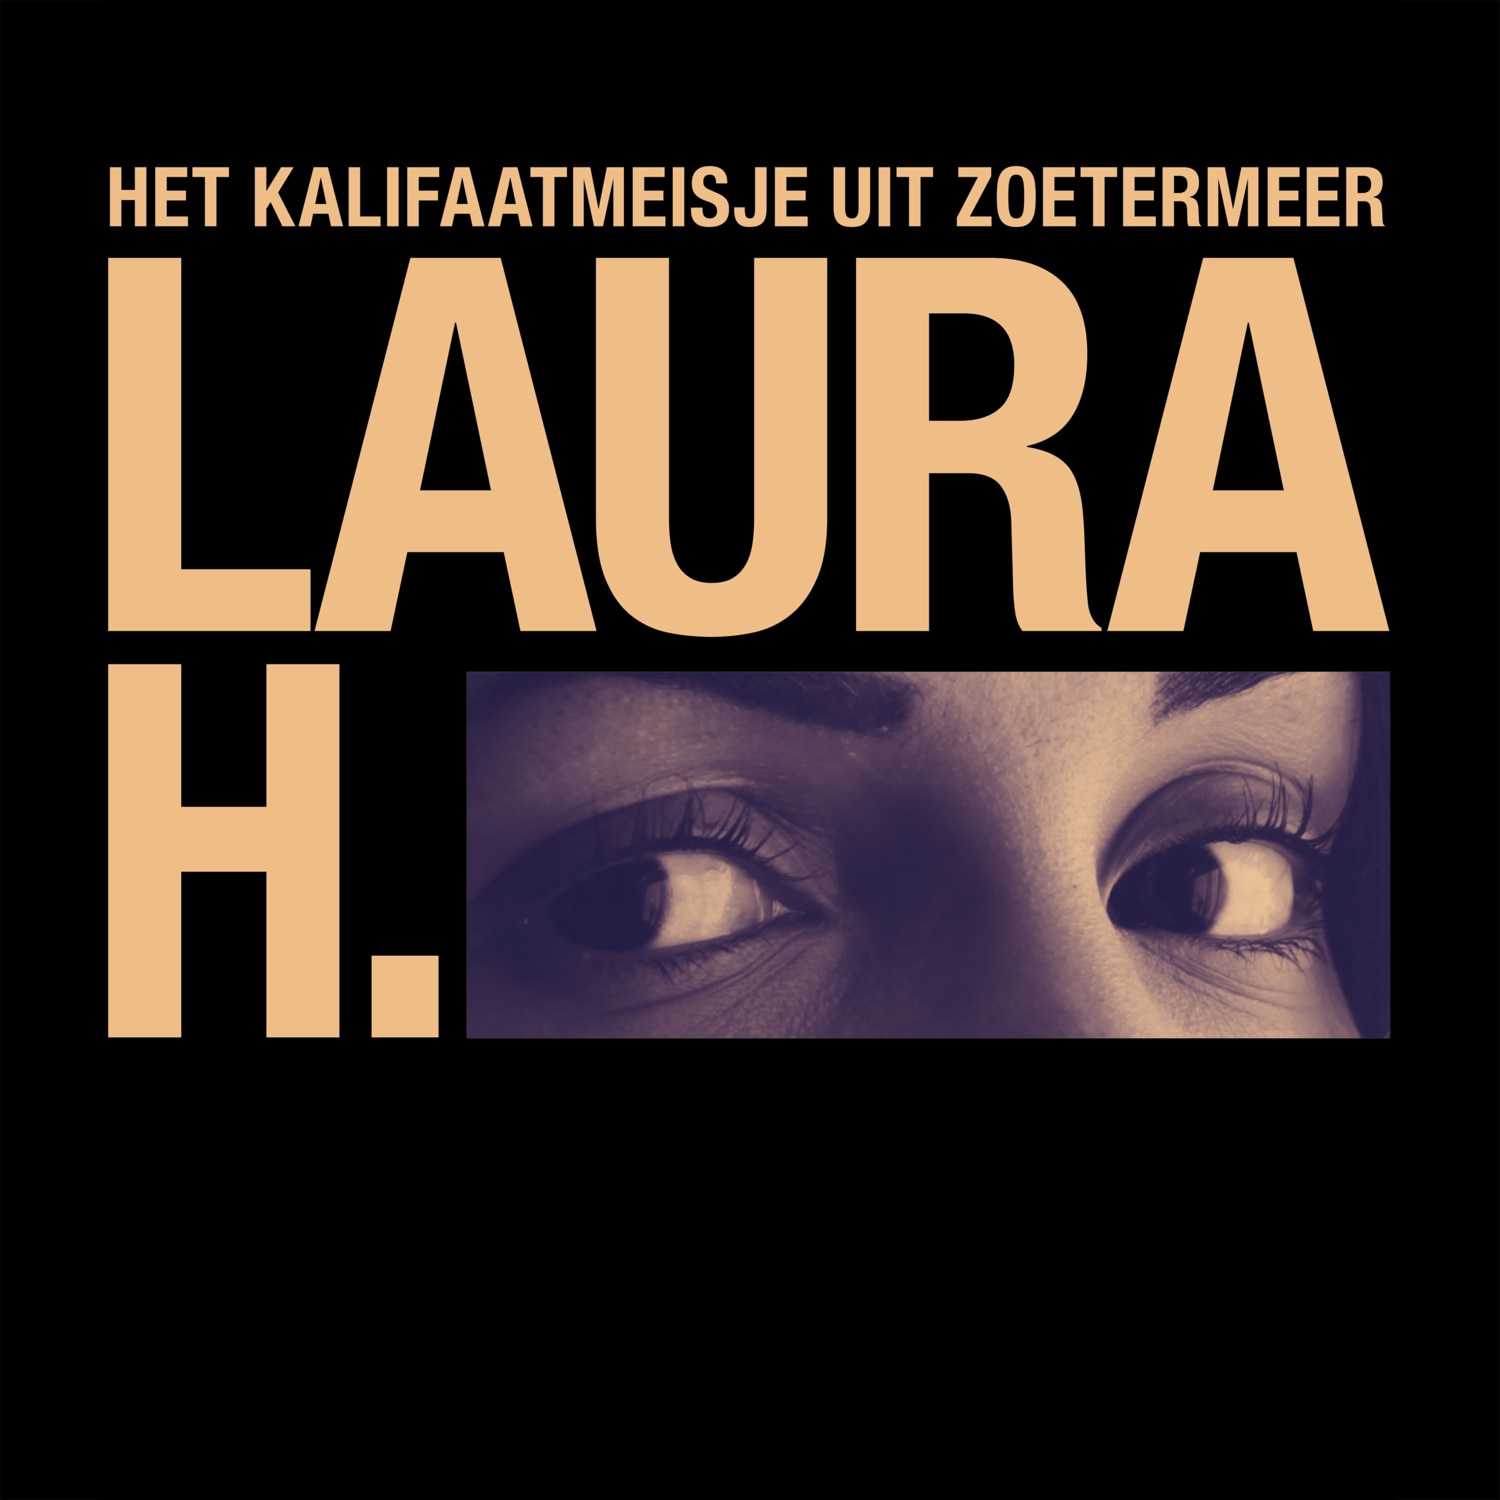 Audiocollectief Schik maakt vier afleveringen over ‘Laura H.’